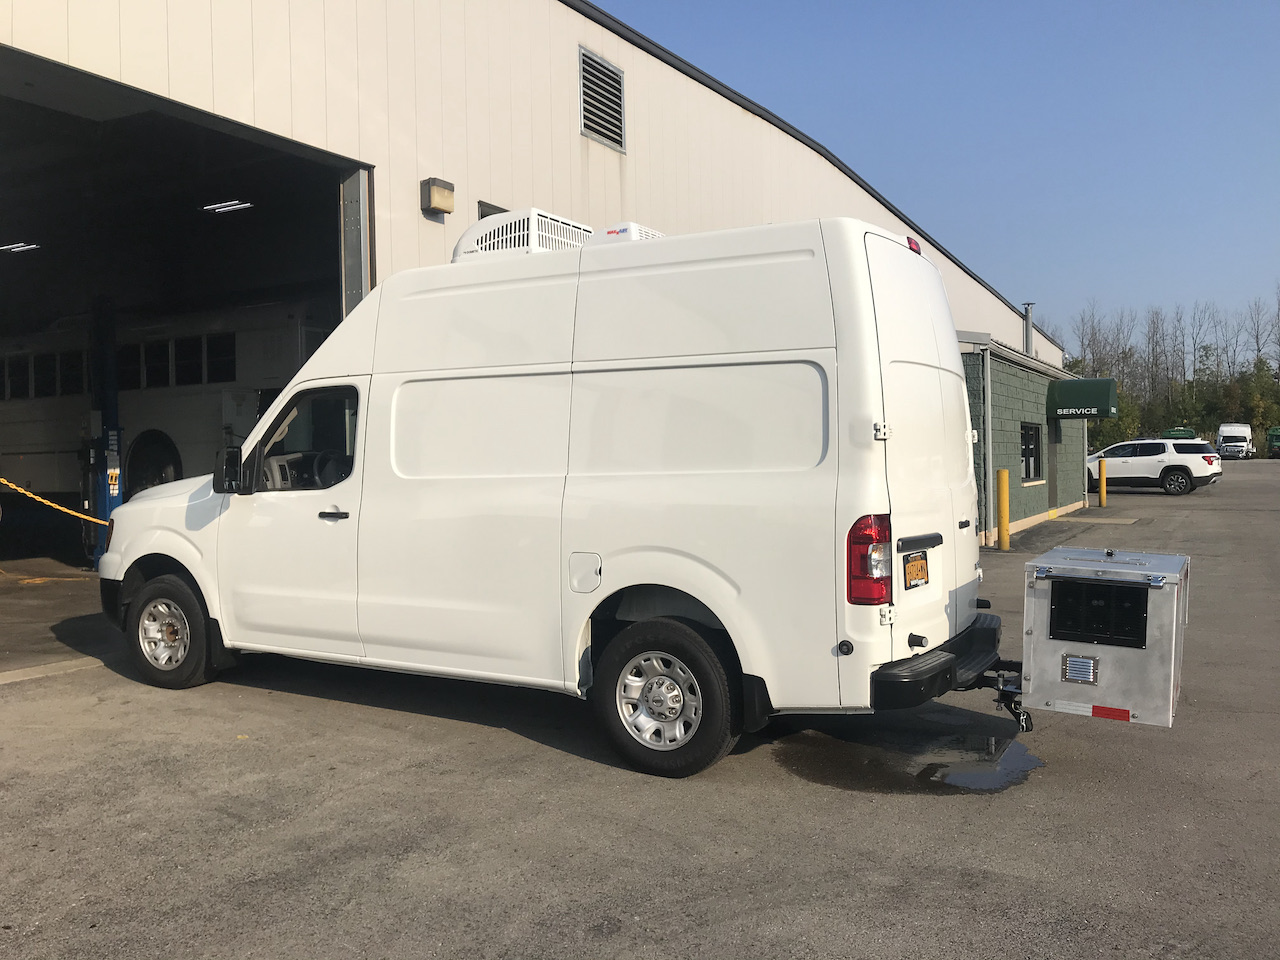 Mobile-Dog-Grooming-Van-47